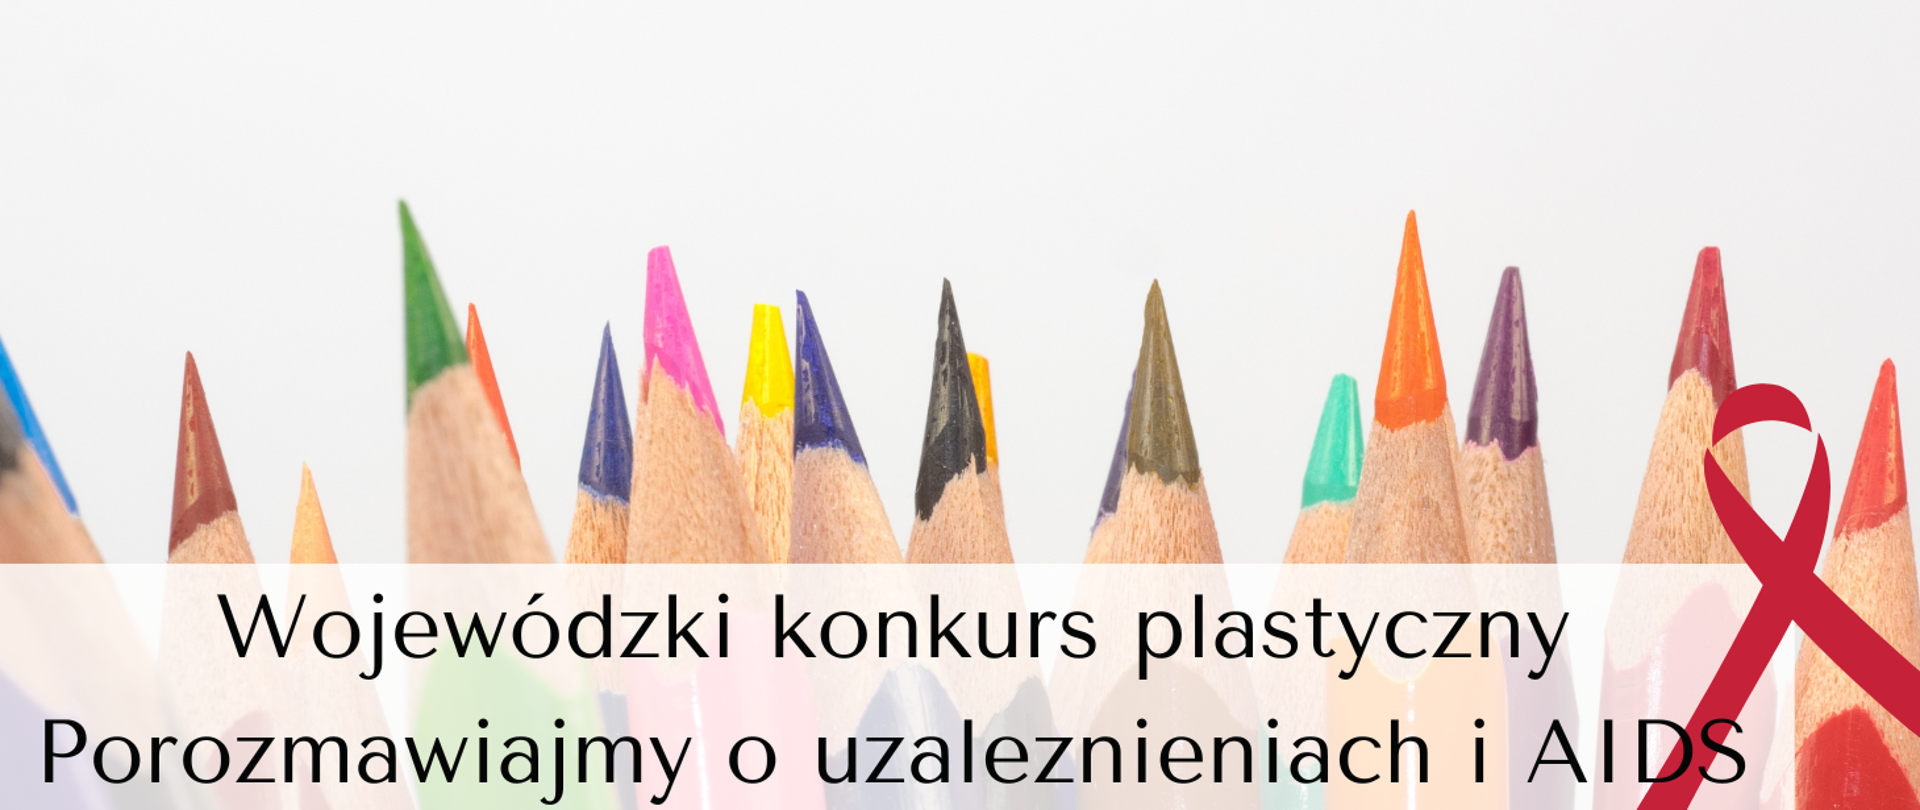 Zdjęcie przedstawia kolorowe kredki na białym tle oraz tekst Wojewódzki konkurs plastyczny Porozmawiajmy o uzależnieniach i AIDS